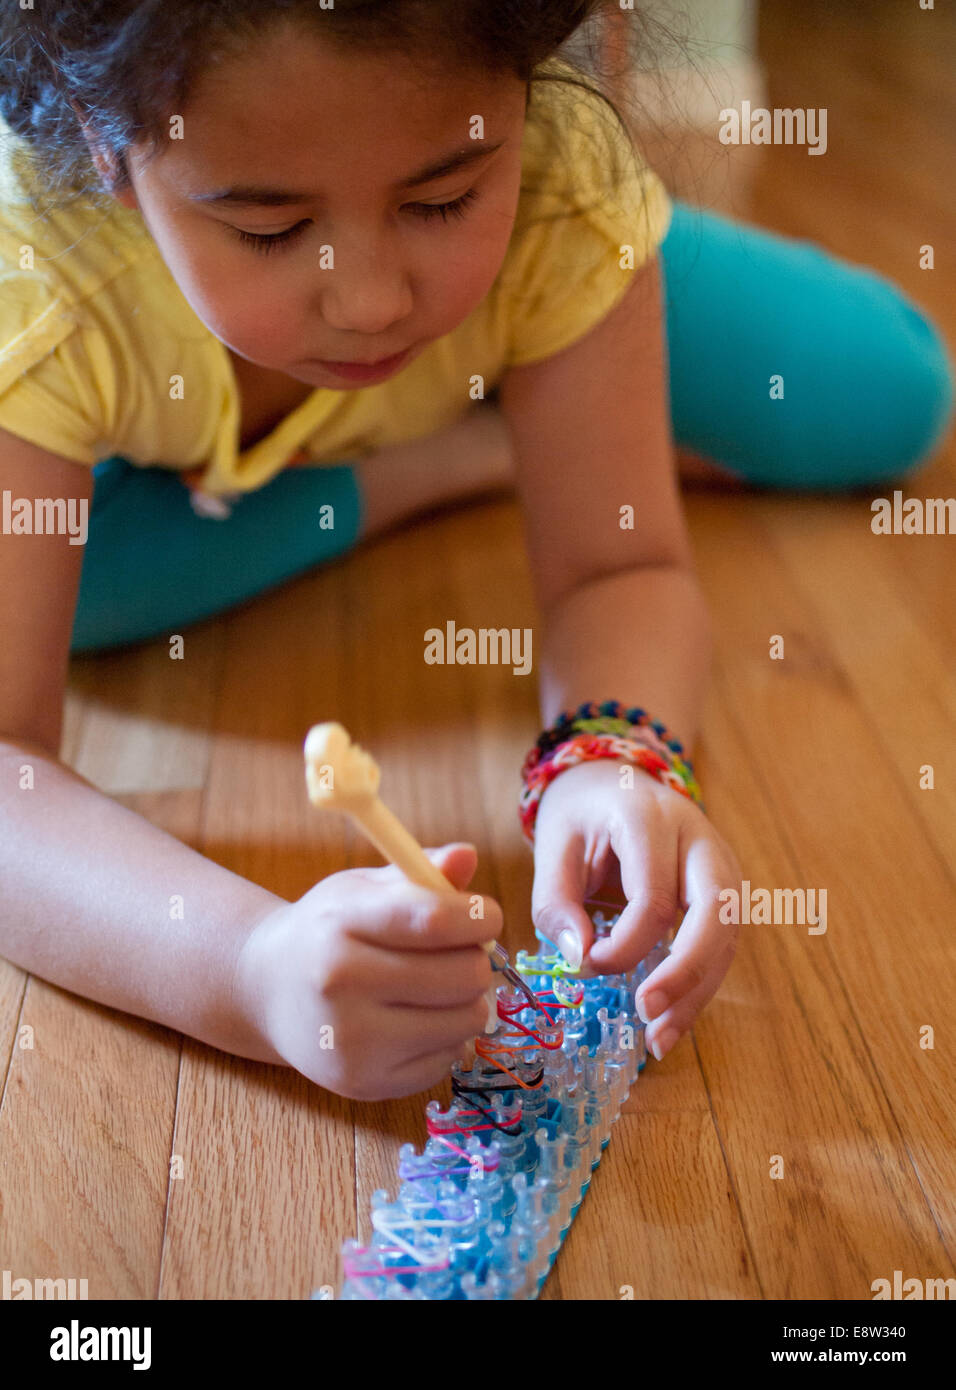 Une mignonne petite fille tisse un bracelet à l'aide d'un arc-en-ciel, un  jouet populaire utilisé pour tisser des bandes de caoutchouc en bracelets  et charms Photo Stock - Alamy